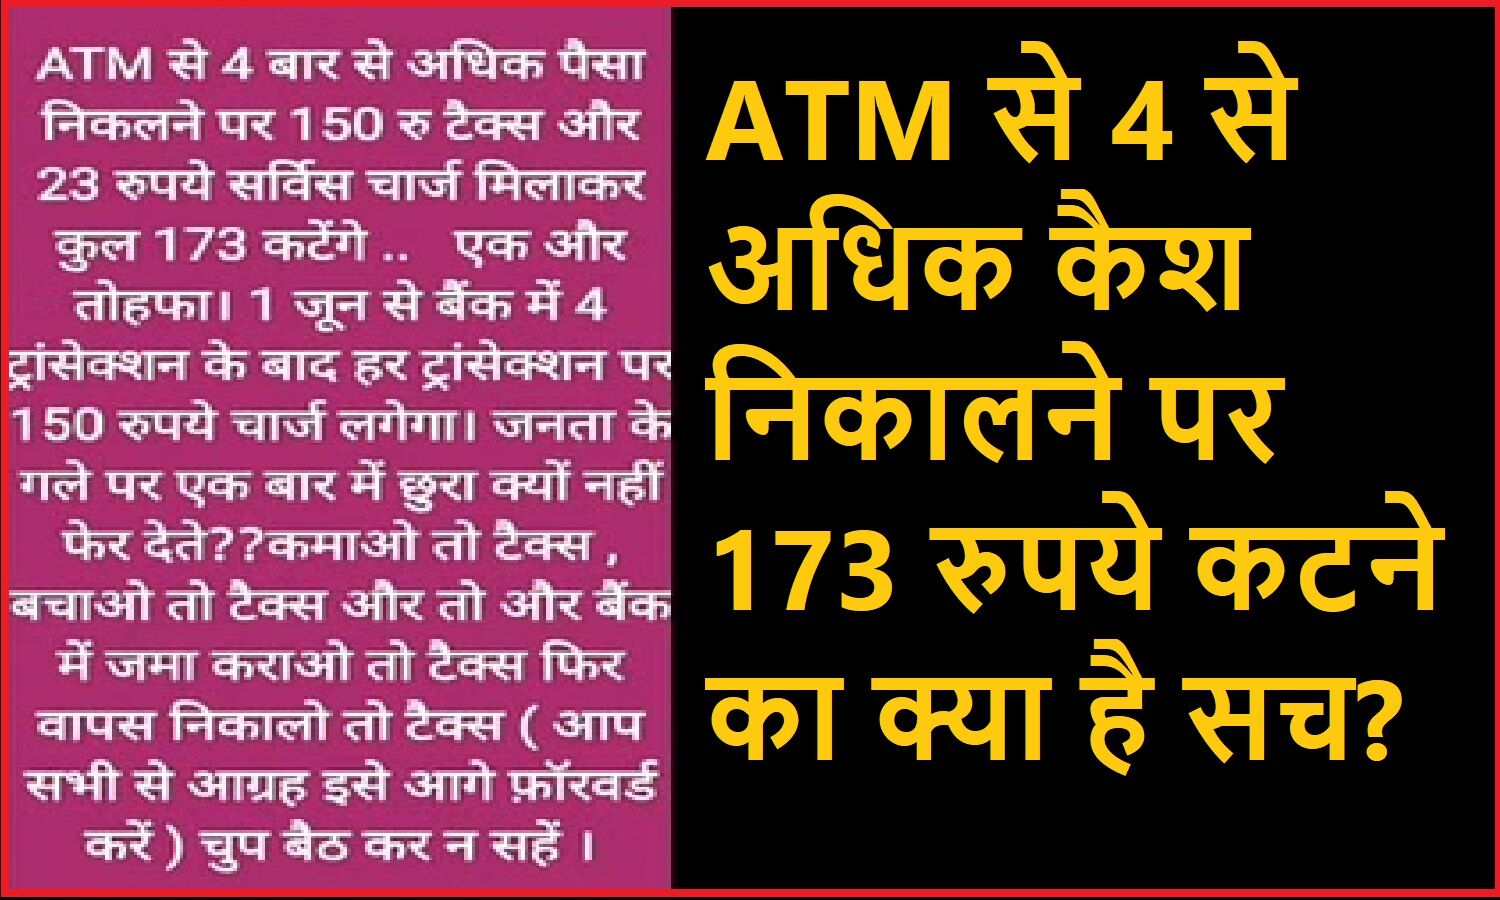 ATM से 4 बार से अधिक निकाले पैसे तो कटेंगे 173 रुपये, जानिए सोशल मीडिया पर वायरल मैसेज का सच